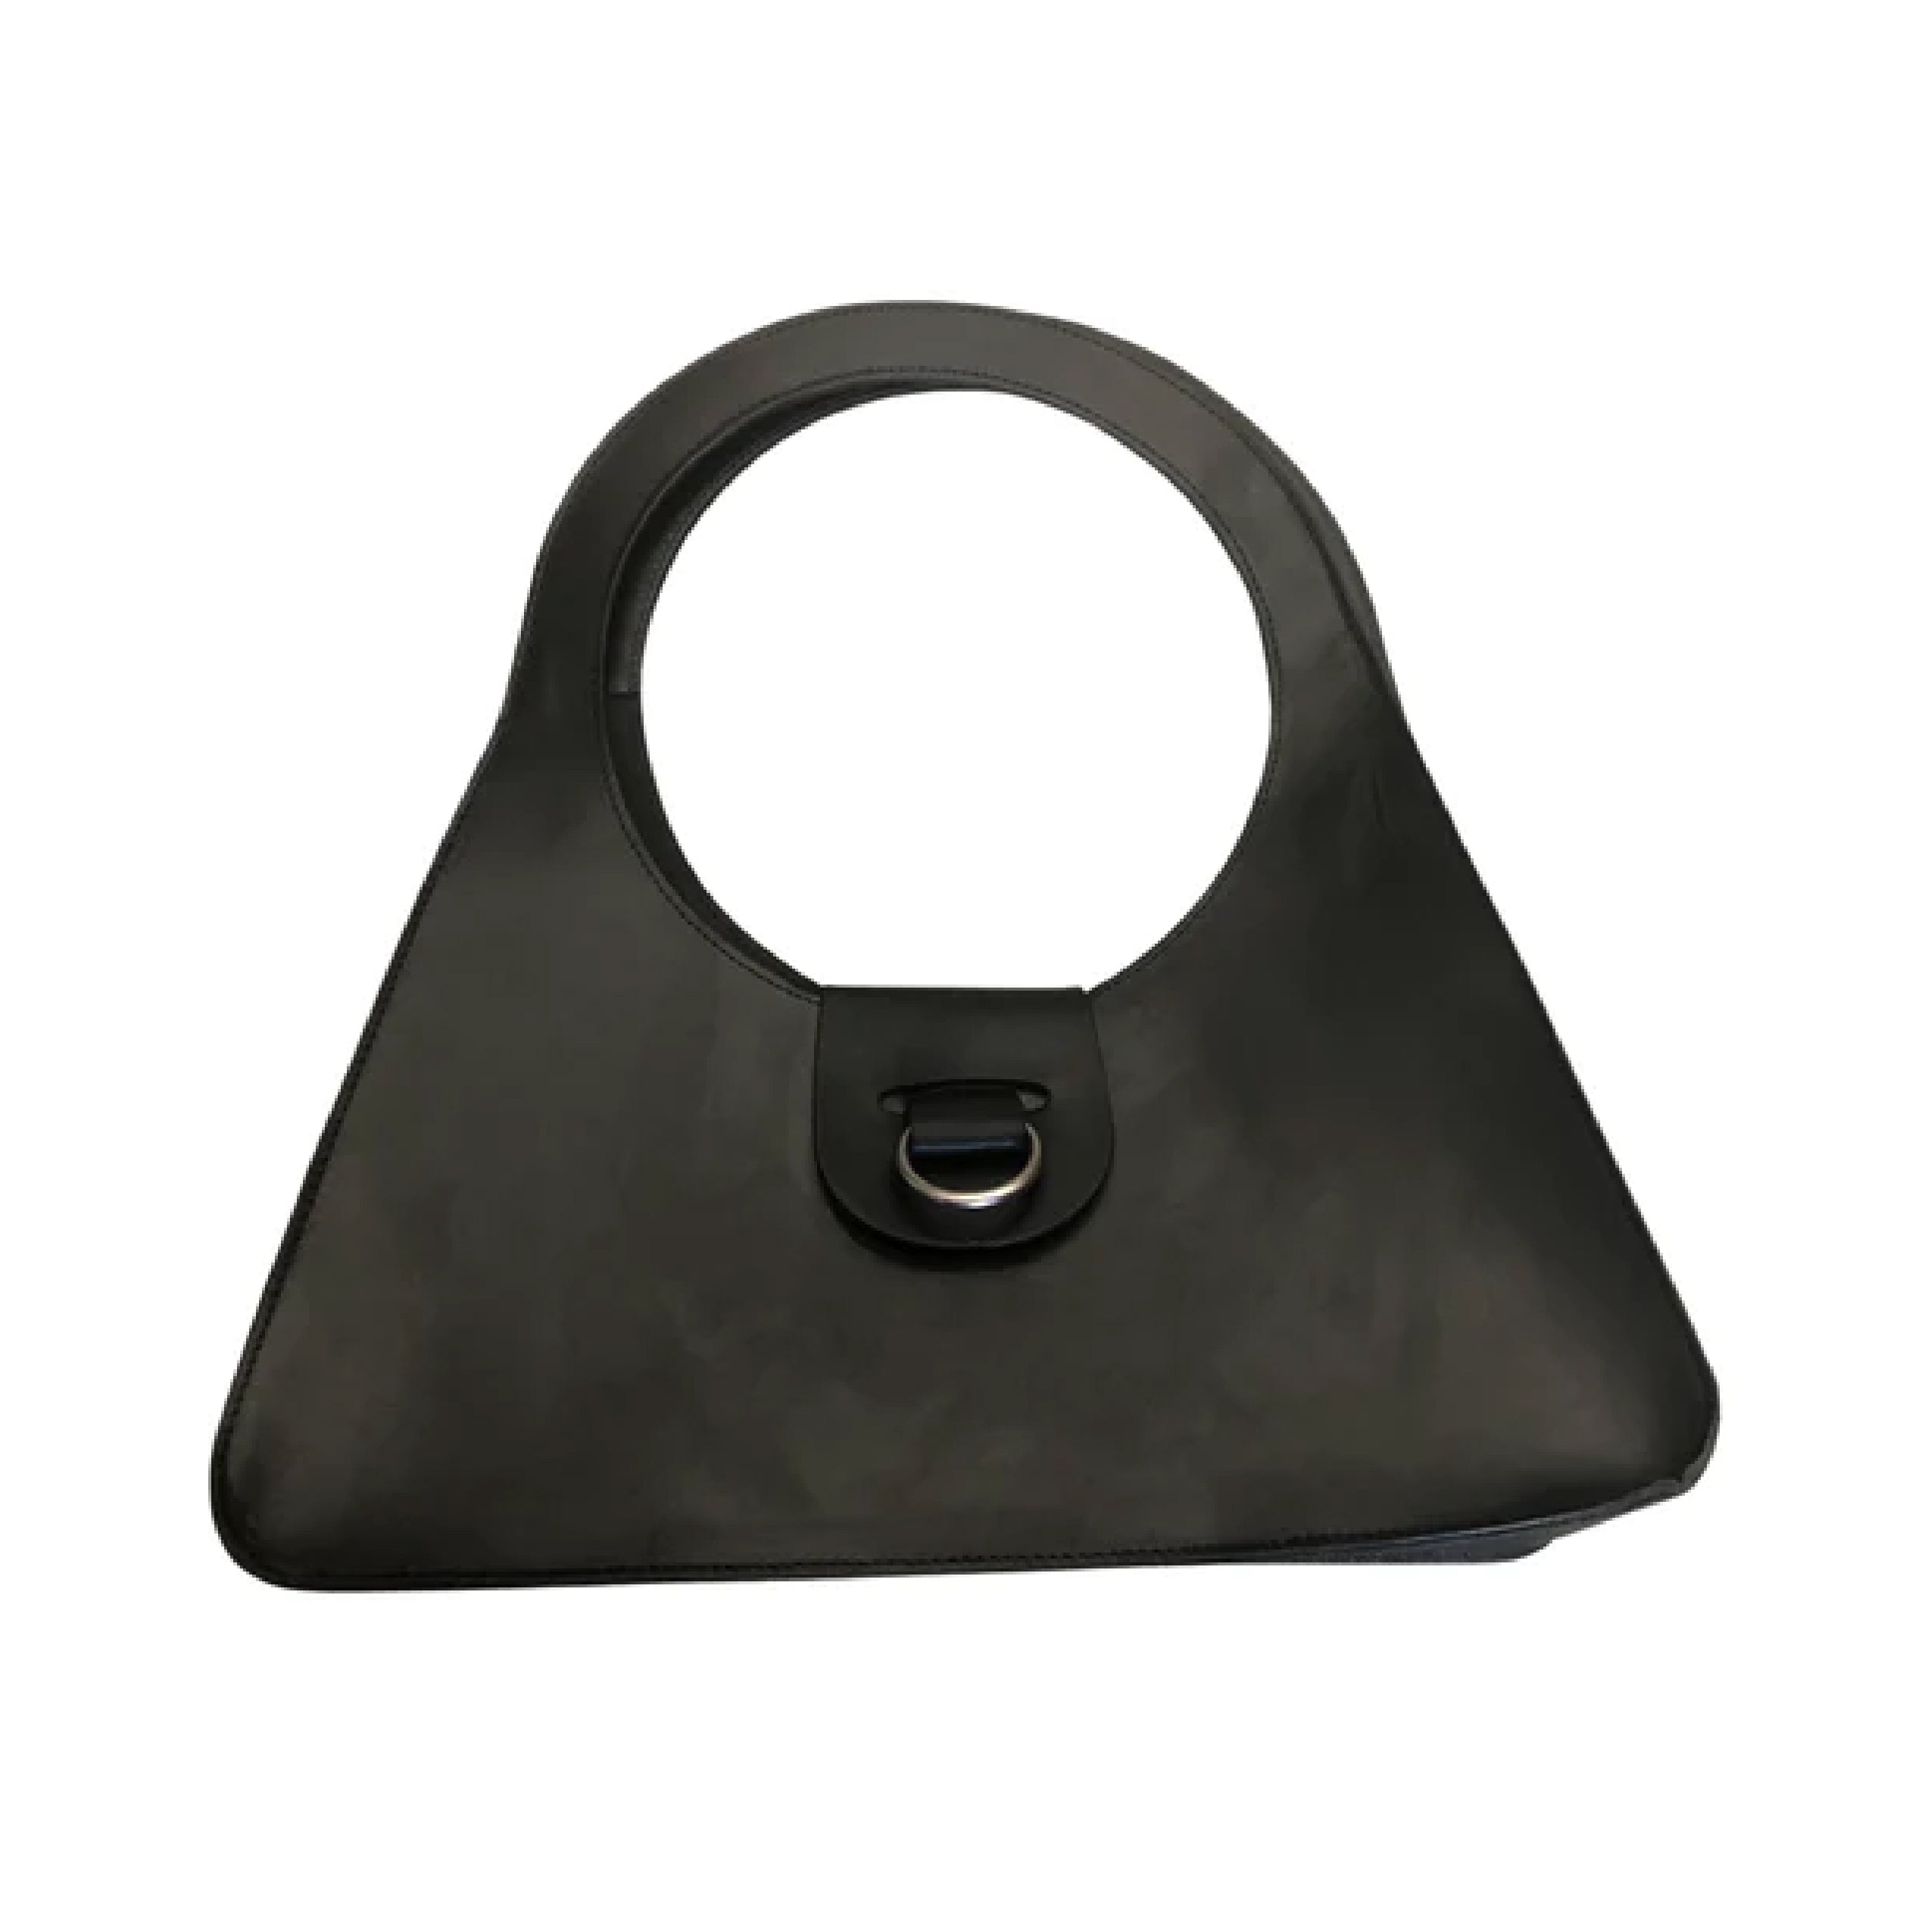 Dean B49 Shoulder Bag black leather